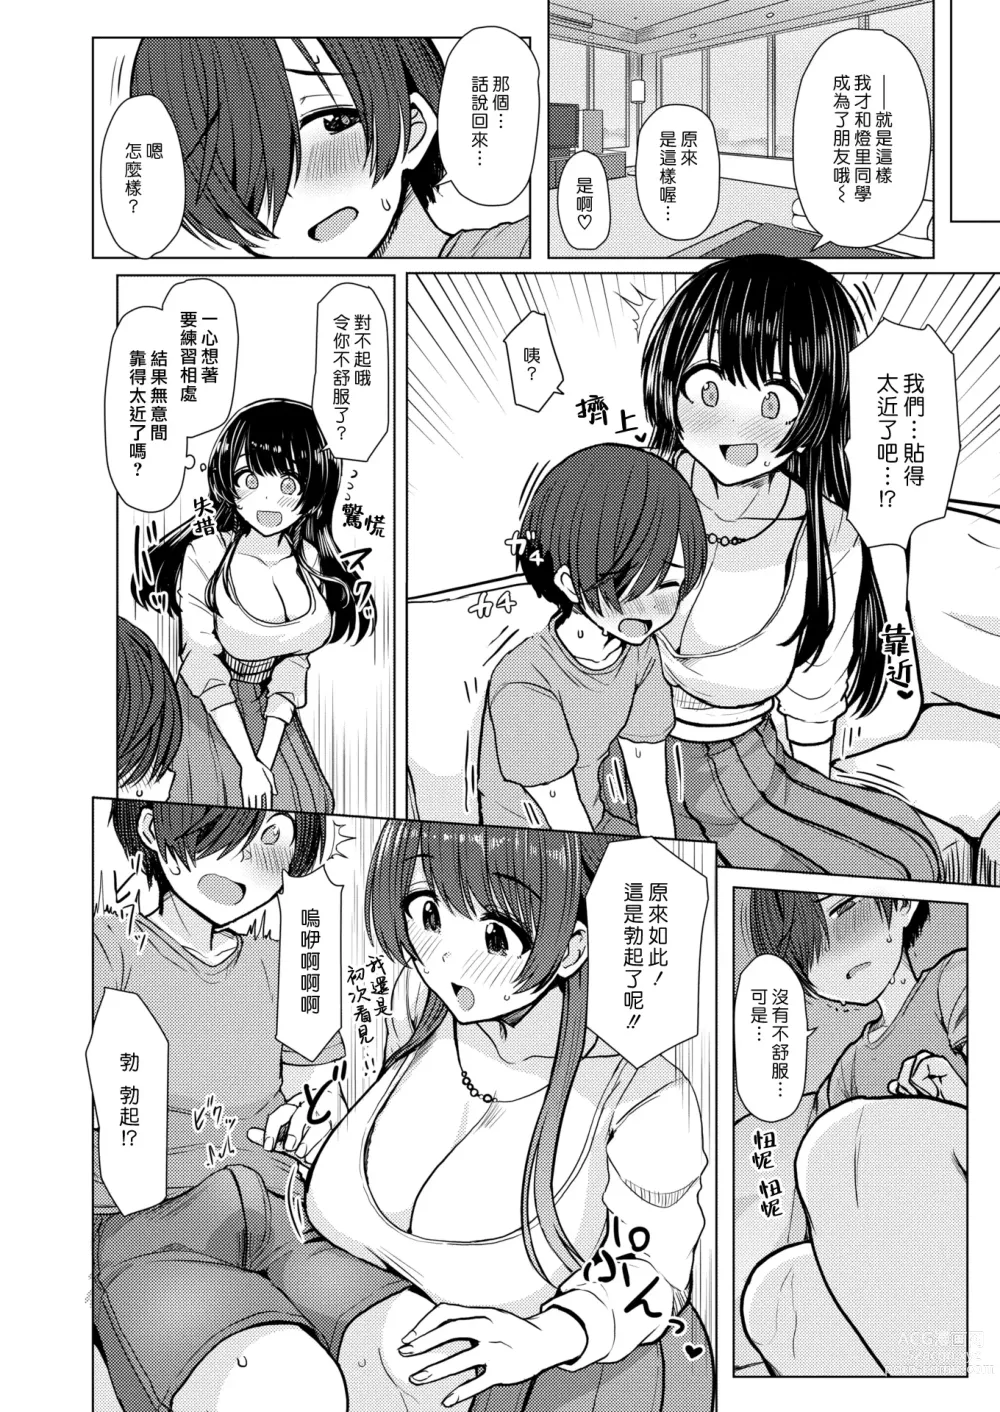 Page 6 of manga 小男孩大挑戰